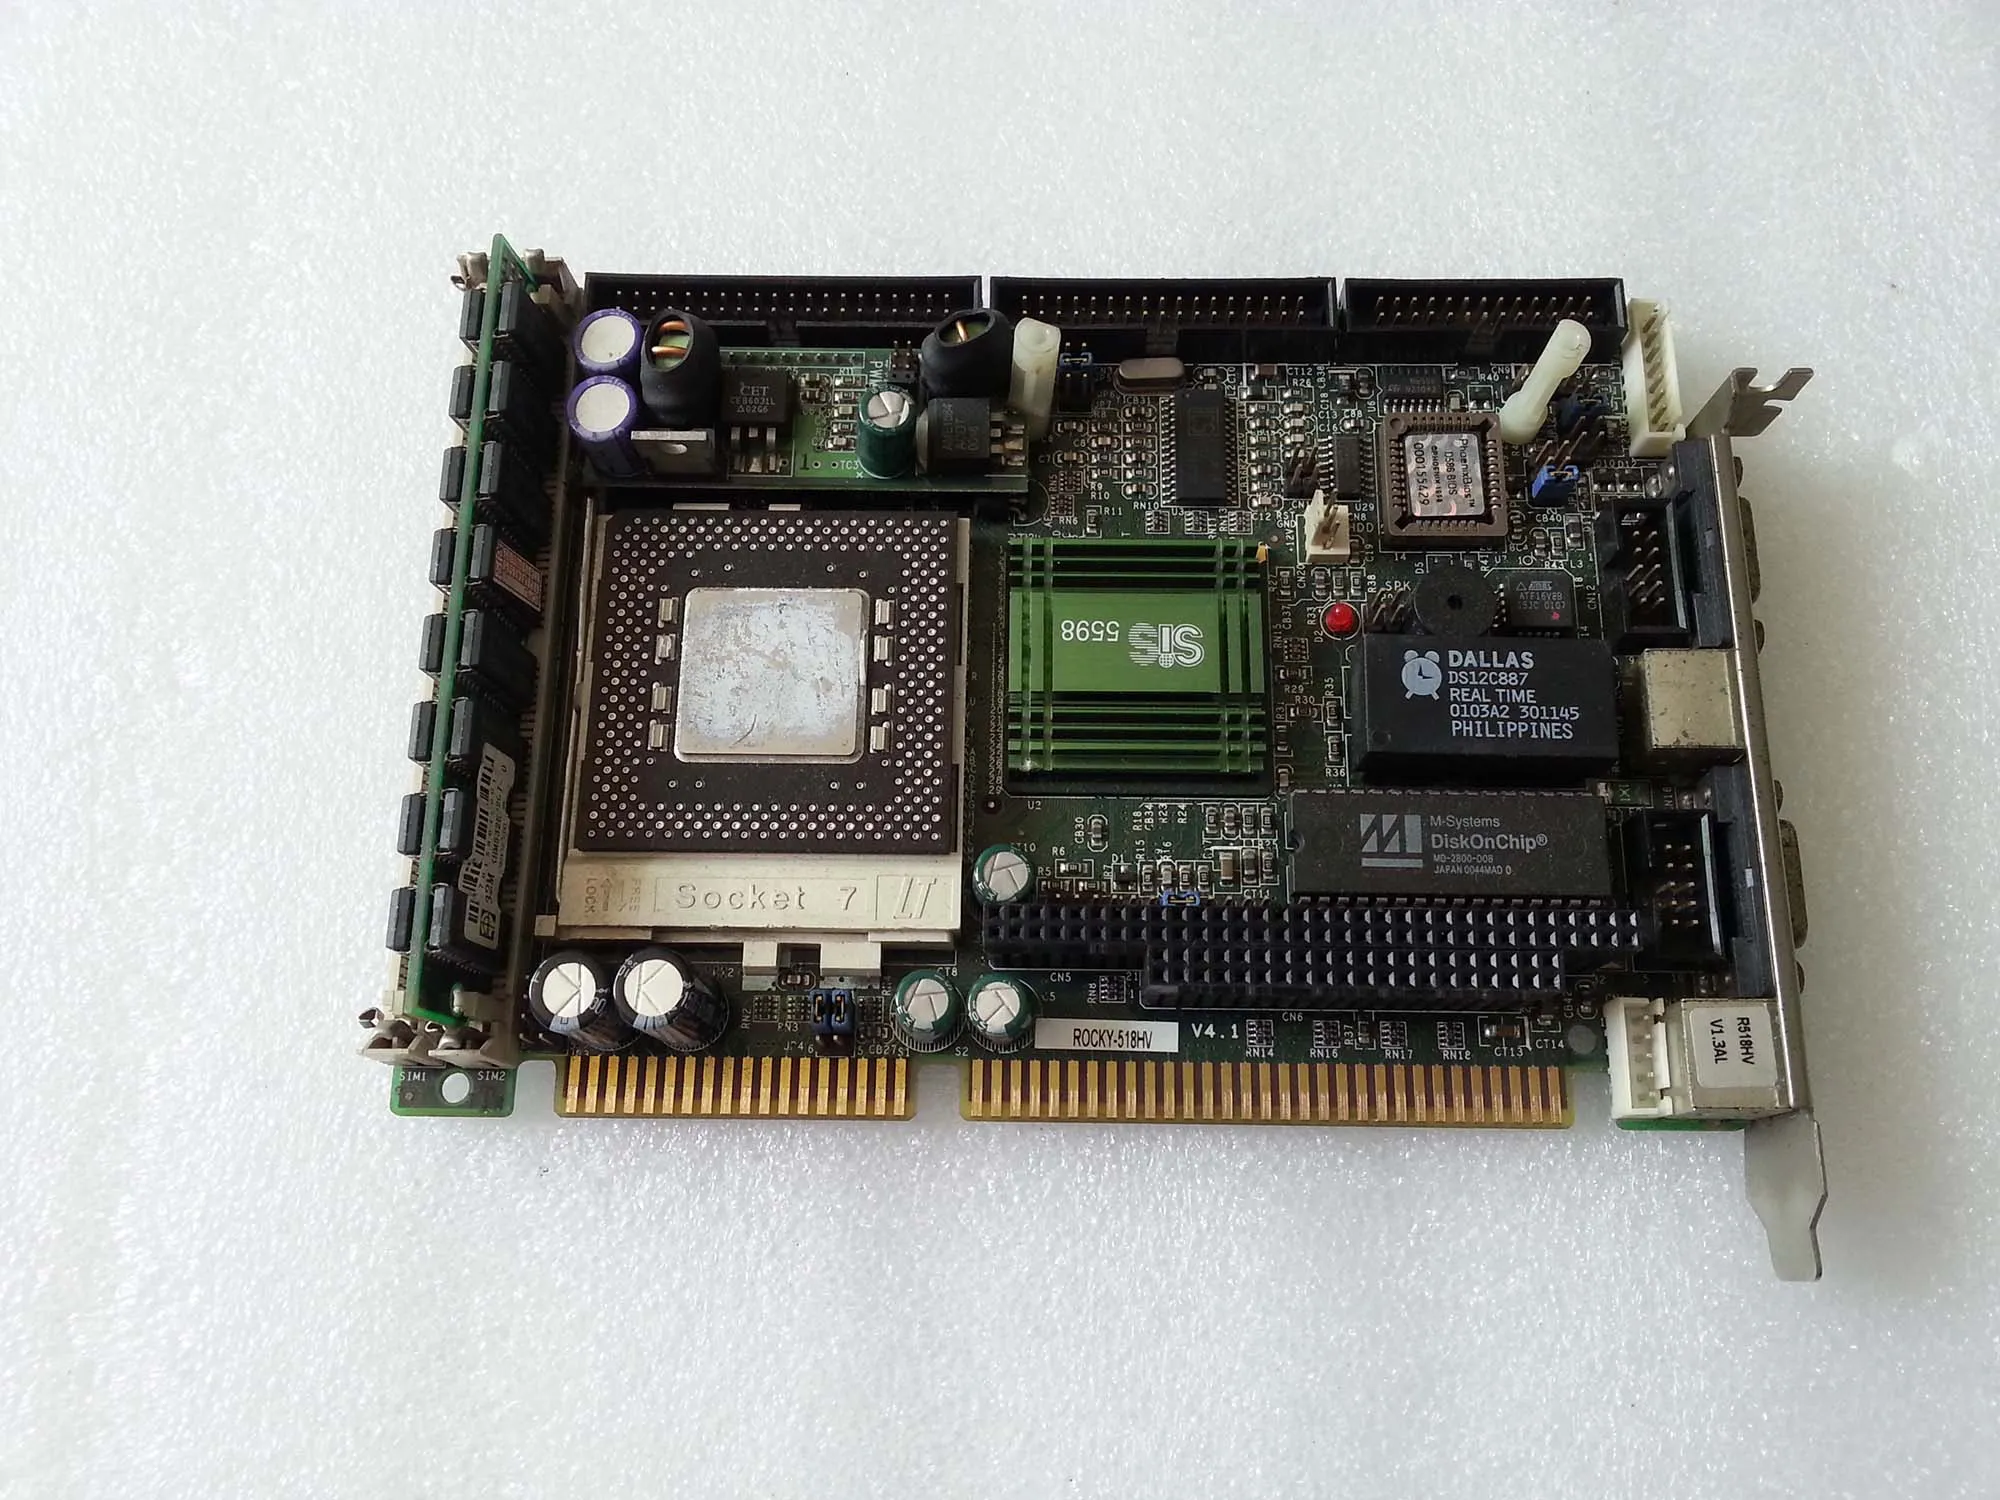 CPUをテストしていない産業用マザーボードがオリジナルの使用済みROCKY-518HV V4.1